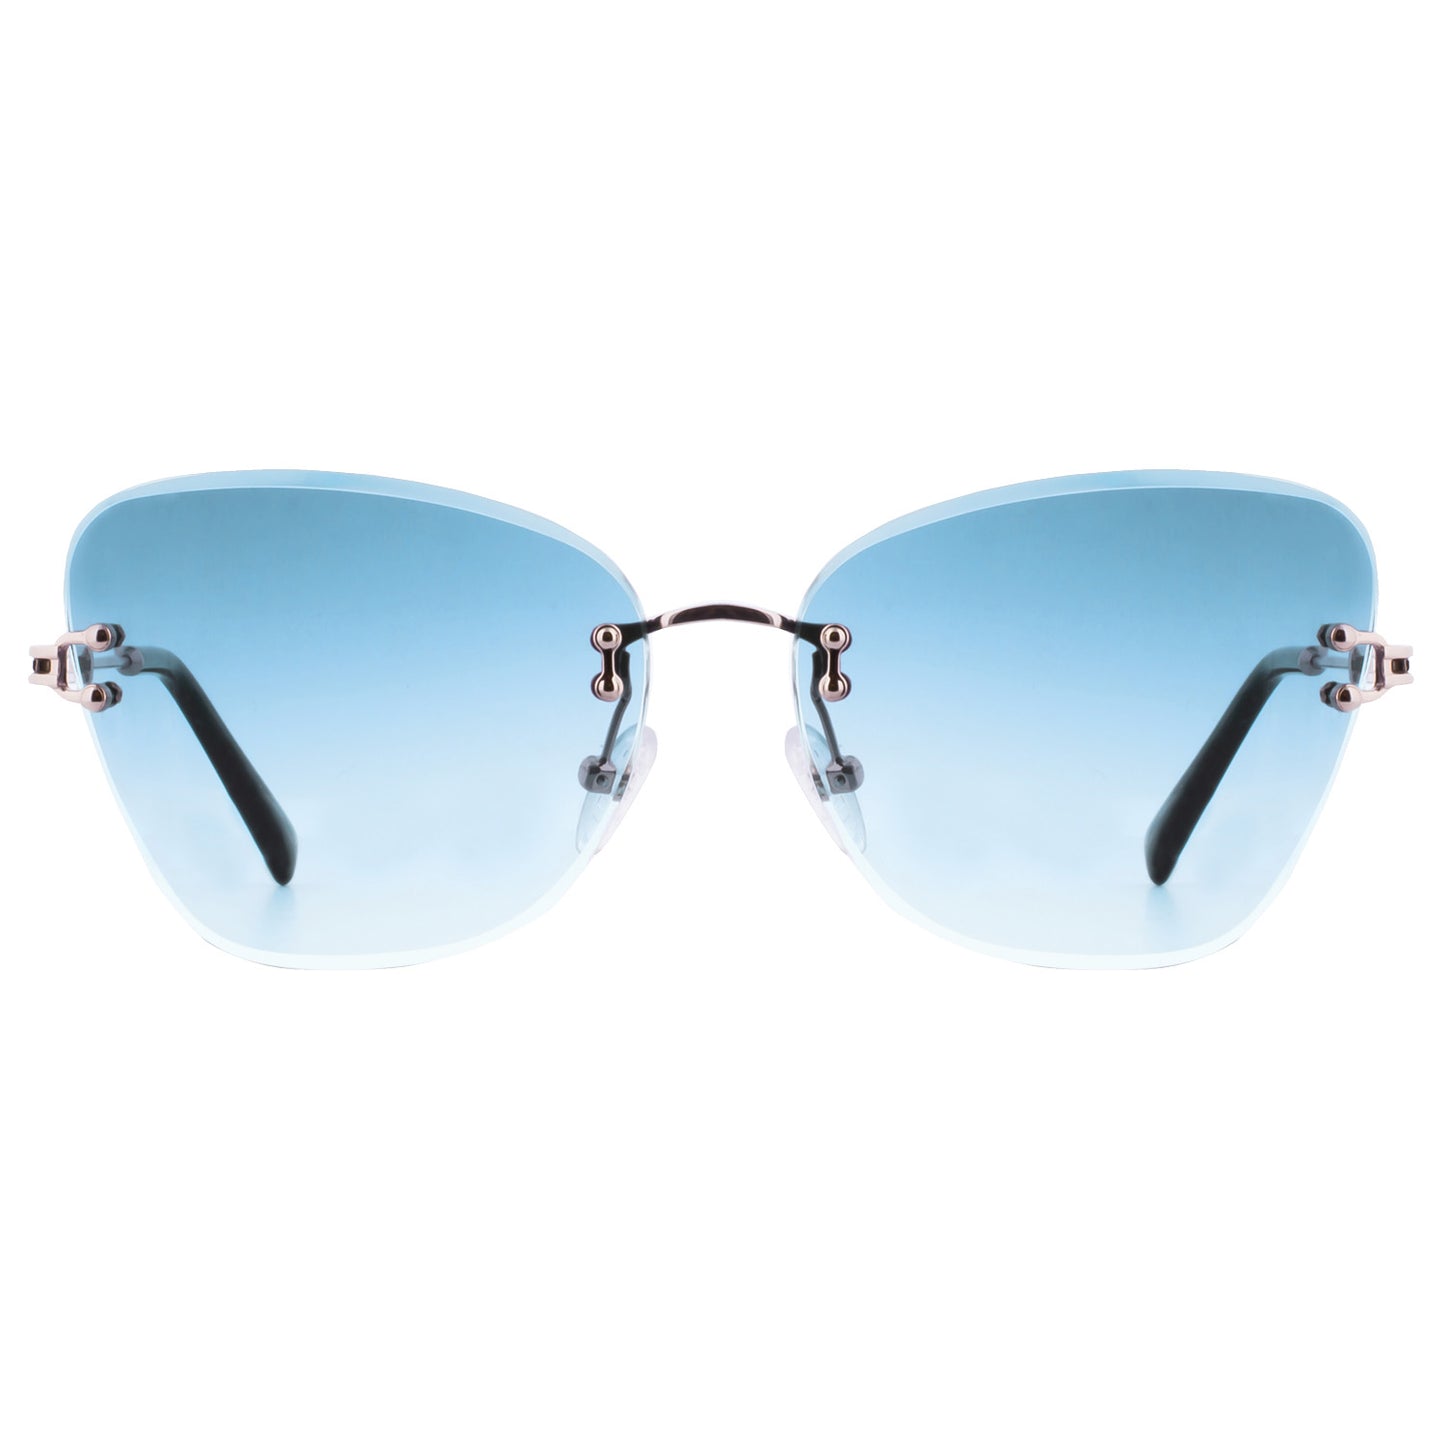 Mokki 90s Butterfly Sunglasses in blue